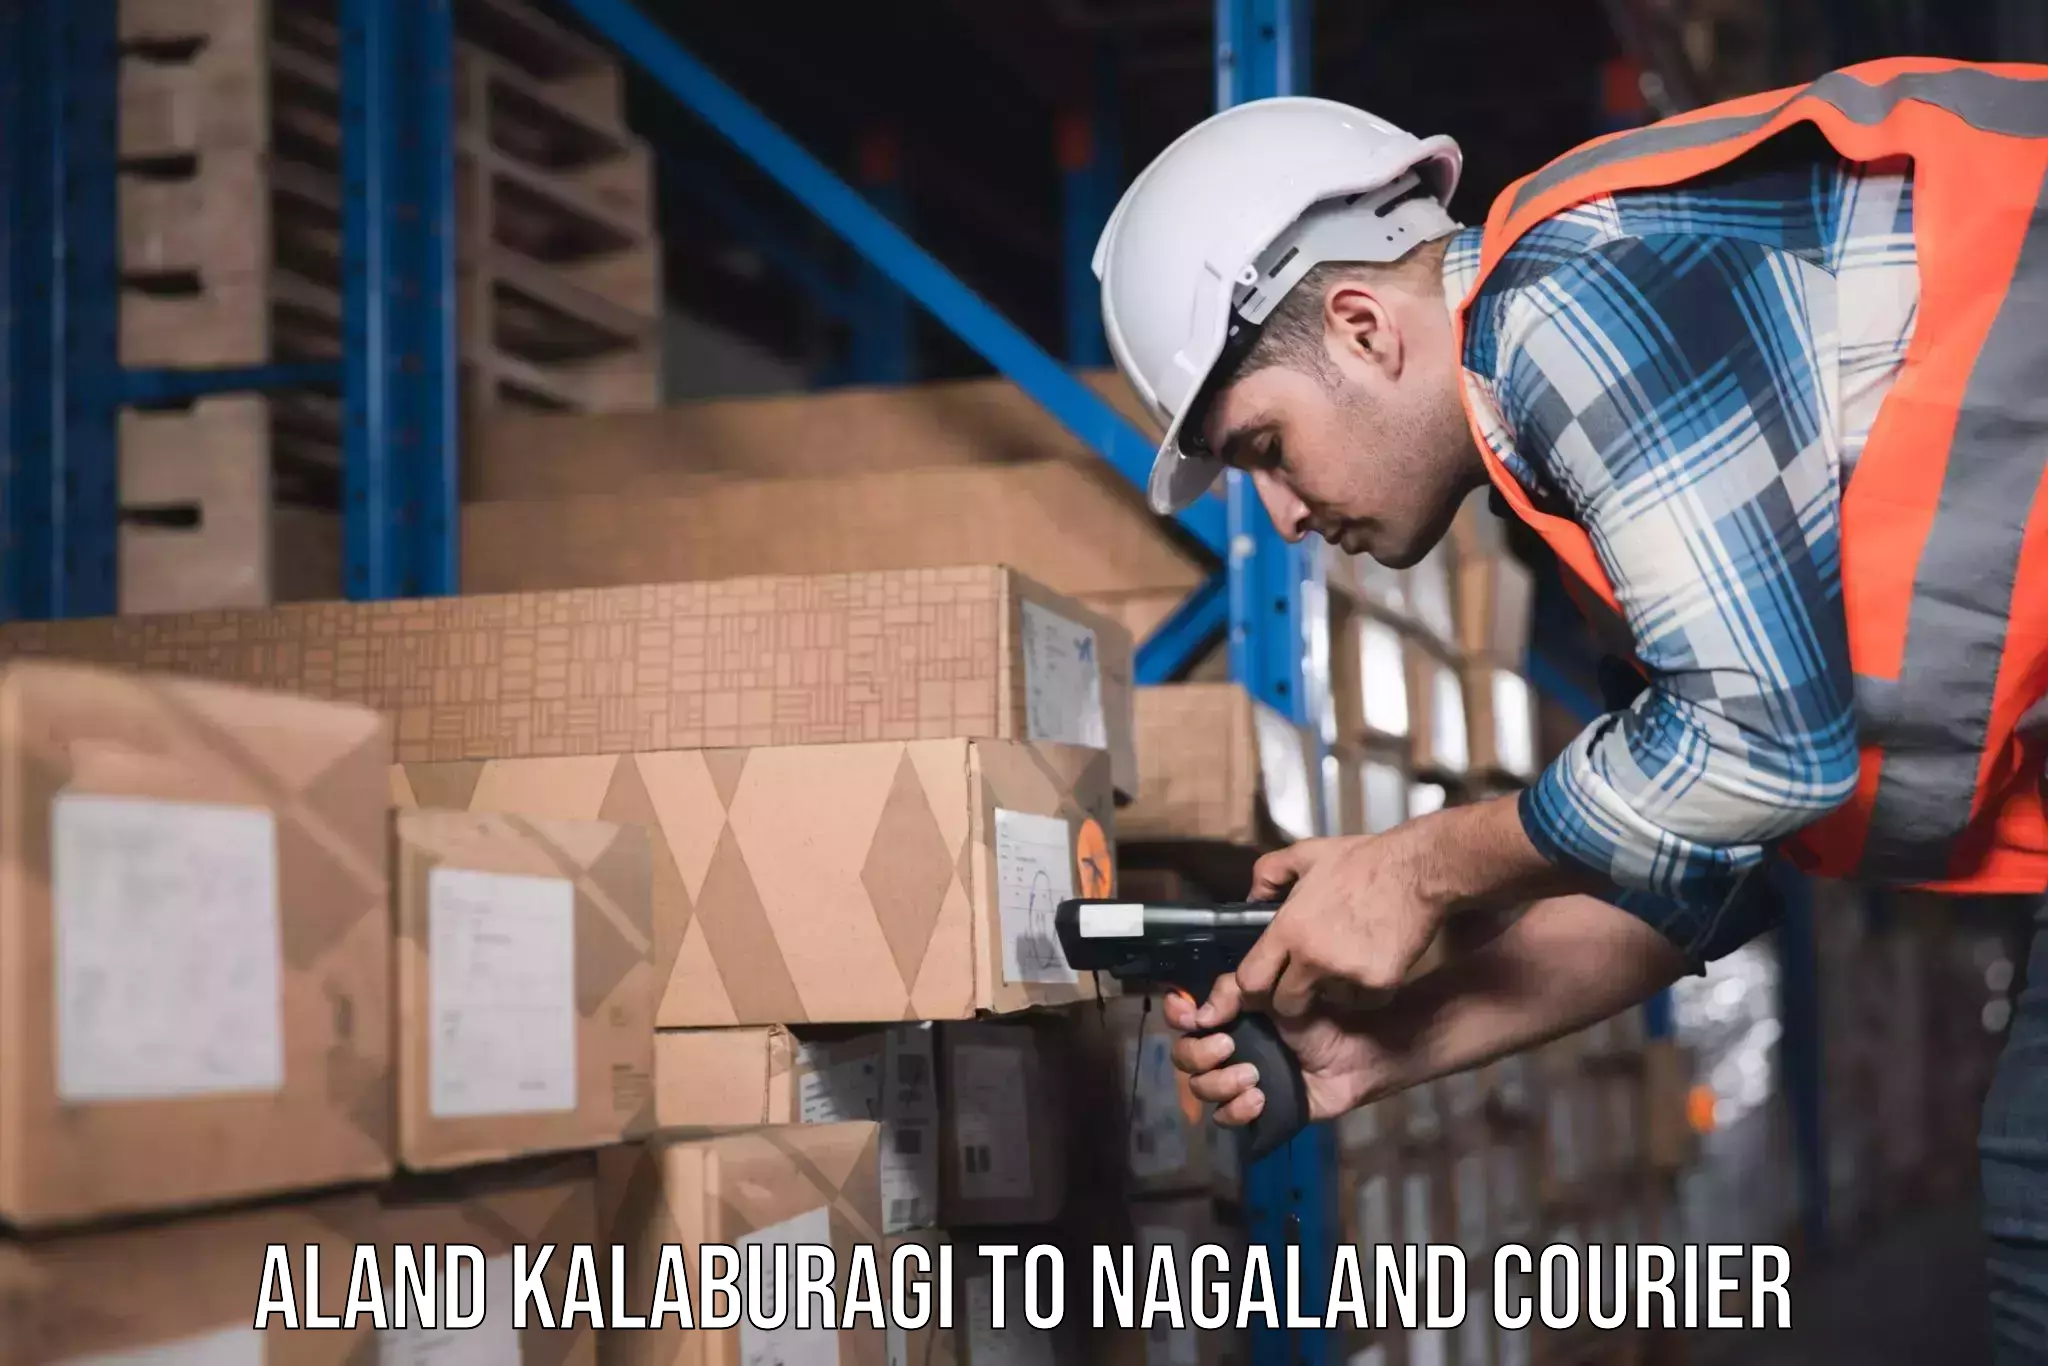 Home shifting experts Aland Kalaburagi to Nagaland